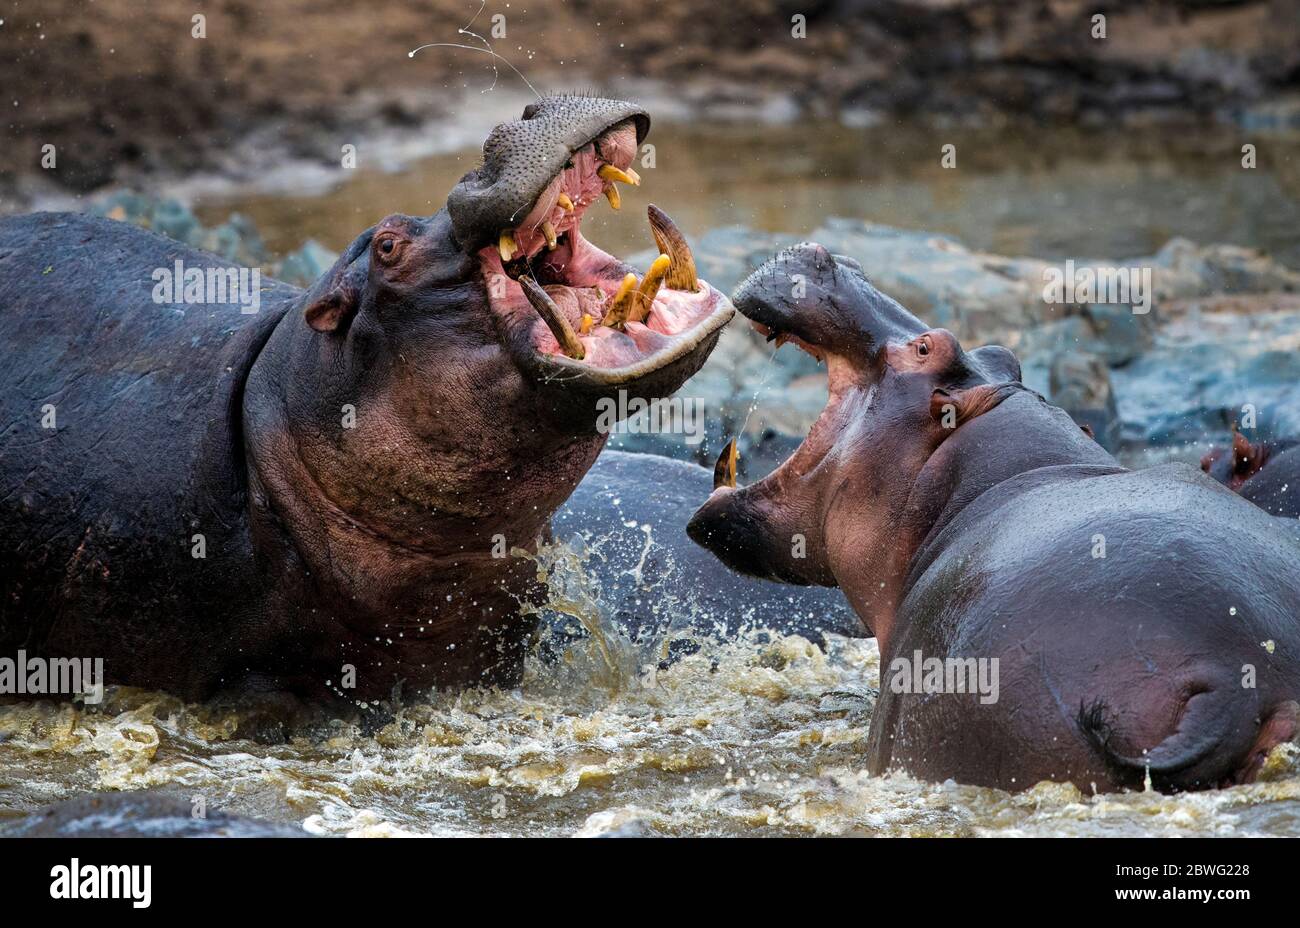 Hippopotames (Hippopotamus amphibius) lutte dans l'eau, Parc national du Serengeti, Tanzanie, Afrique Banque D'Images